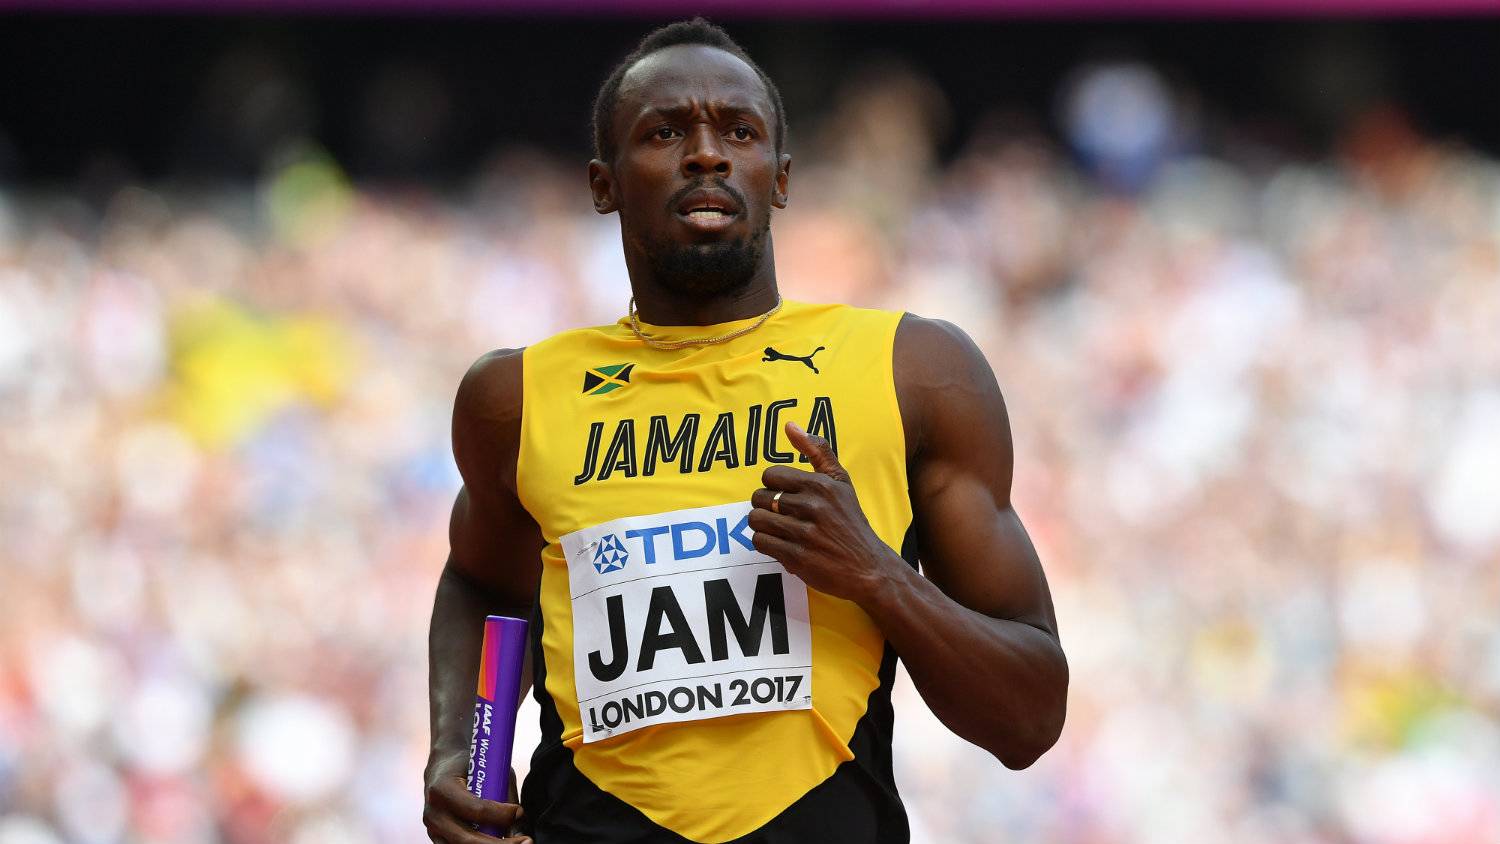 Usain Bolt: Tudtam volna javítani a világrekordomon